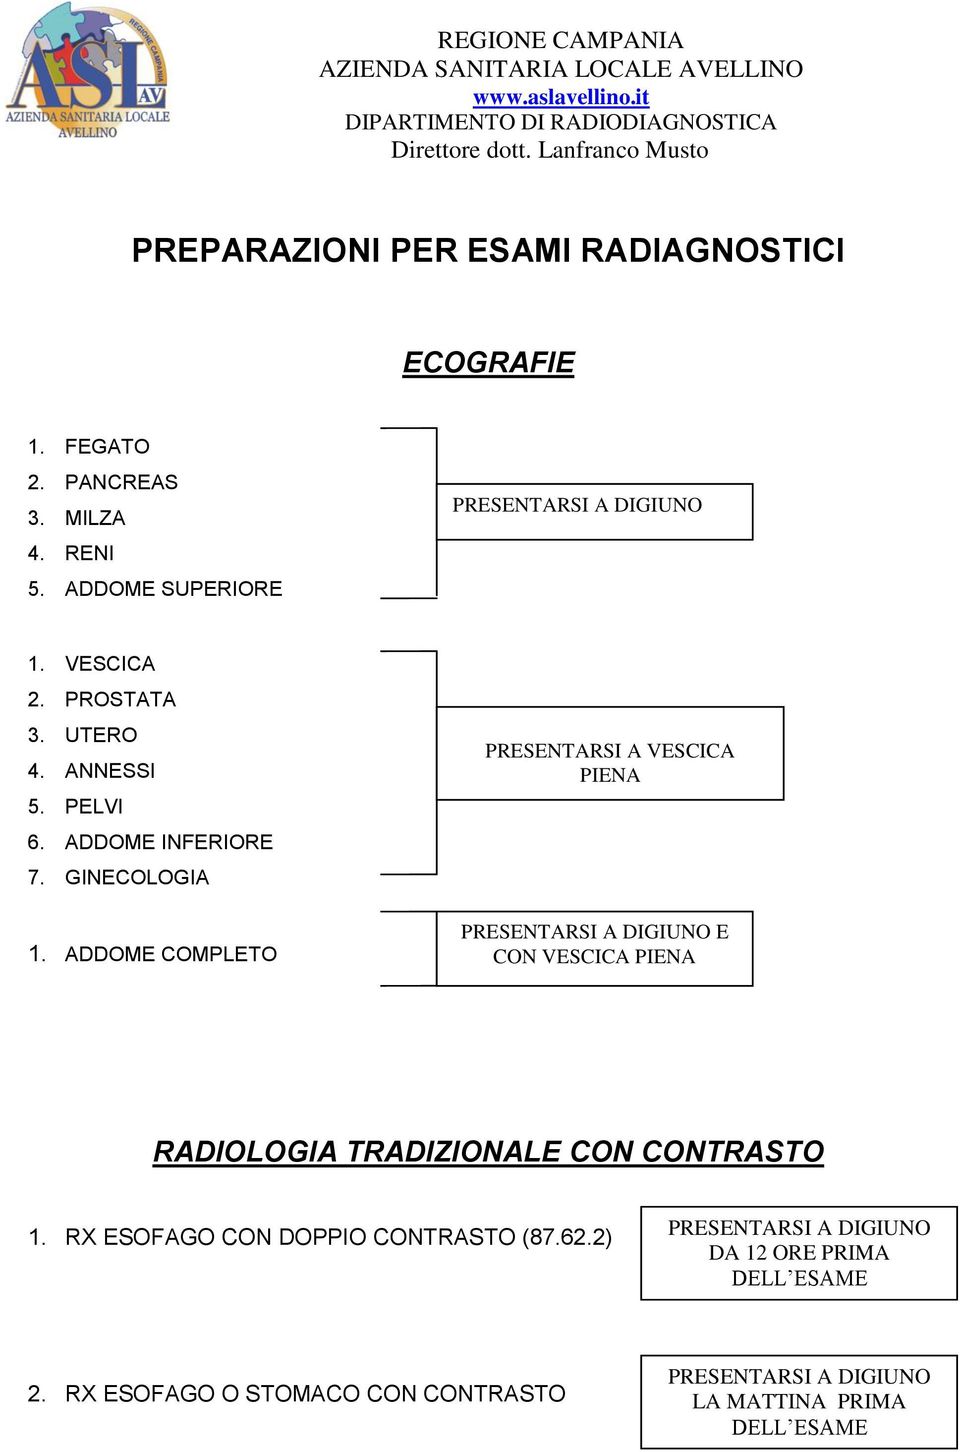 ADDOME COMPLETO PRESENTARSI A VESCICA PIENA E CON VESCICA PIENA RADIOLOGIA TRADIZIONALE CON CONTRASTO 1.